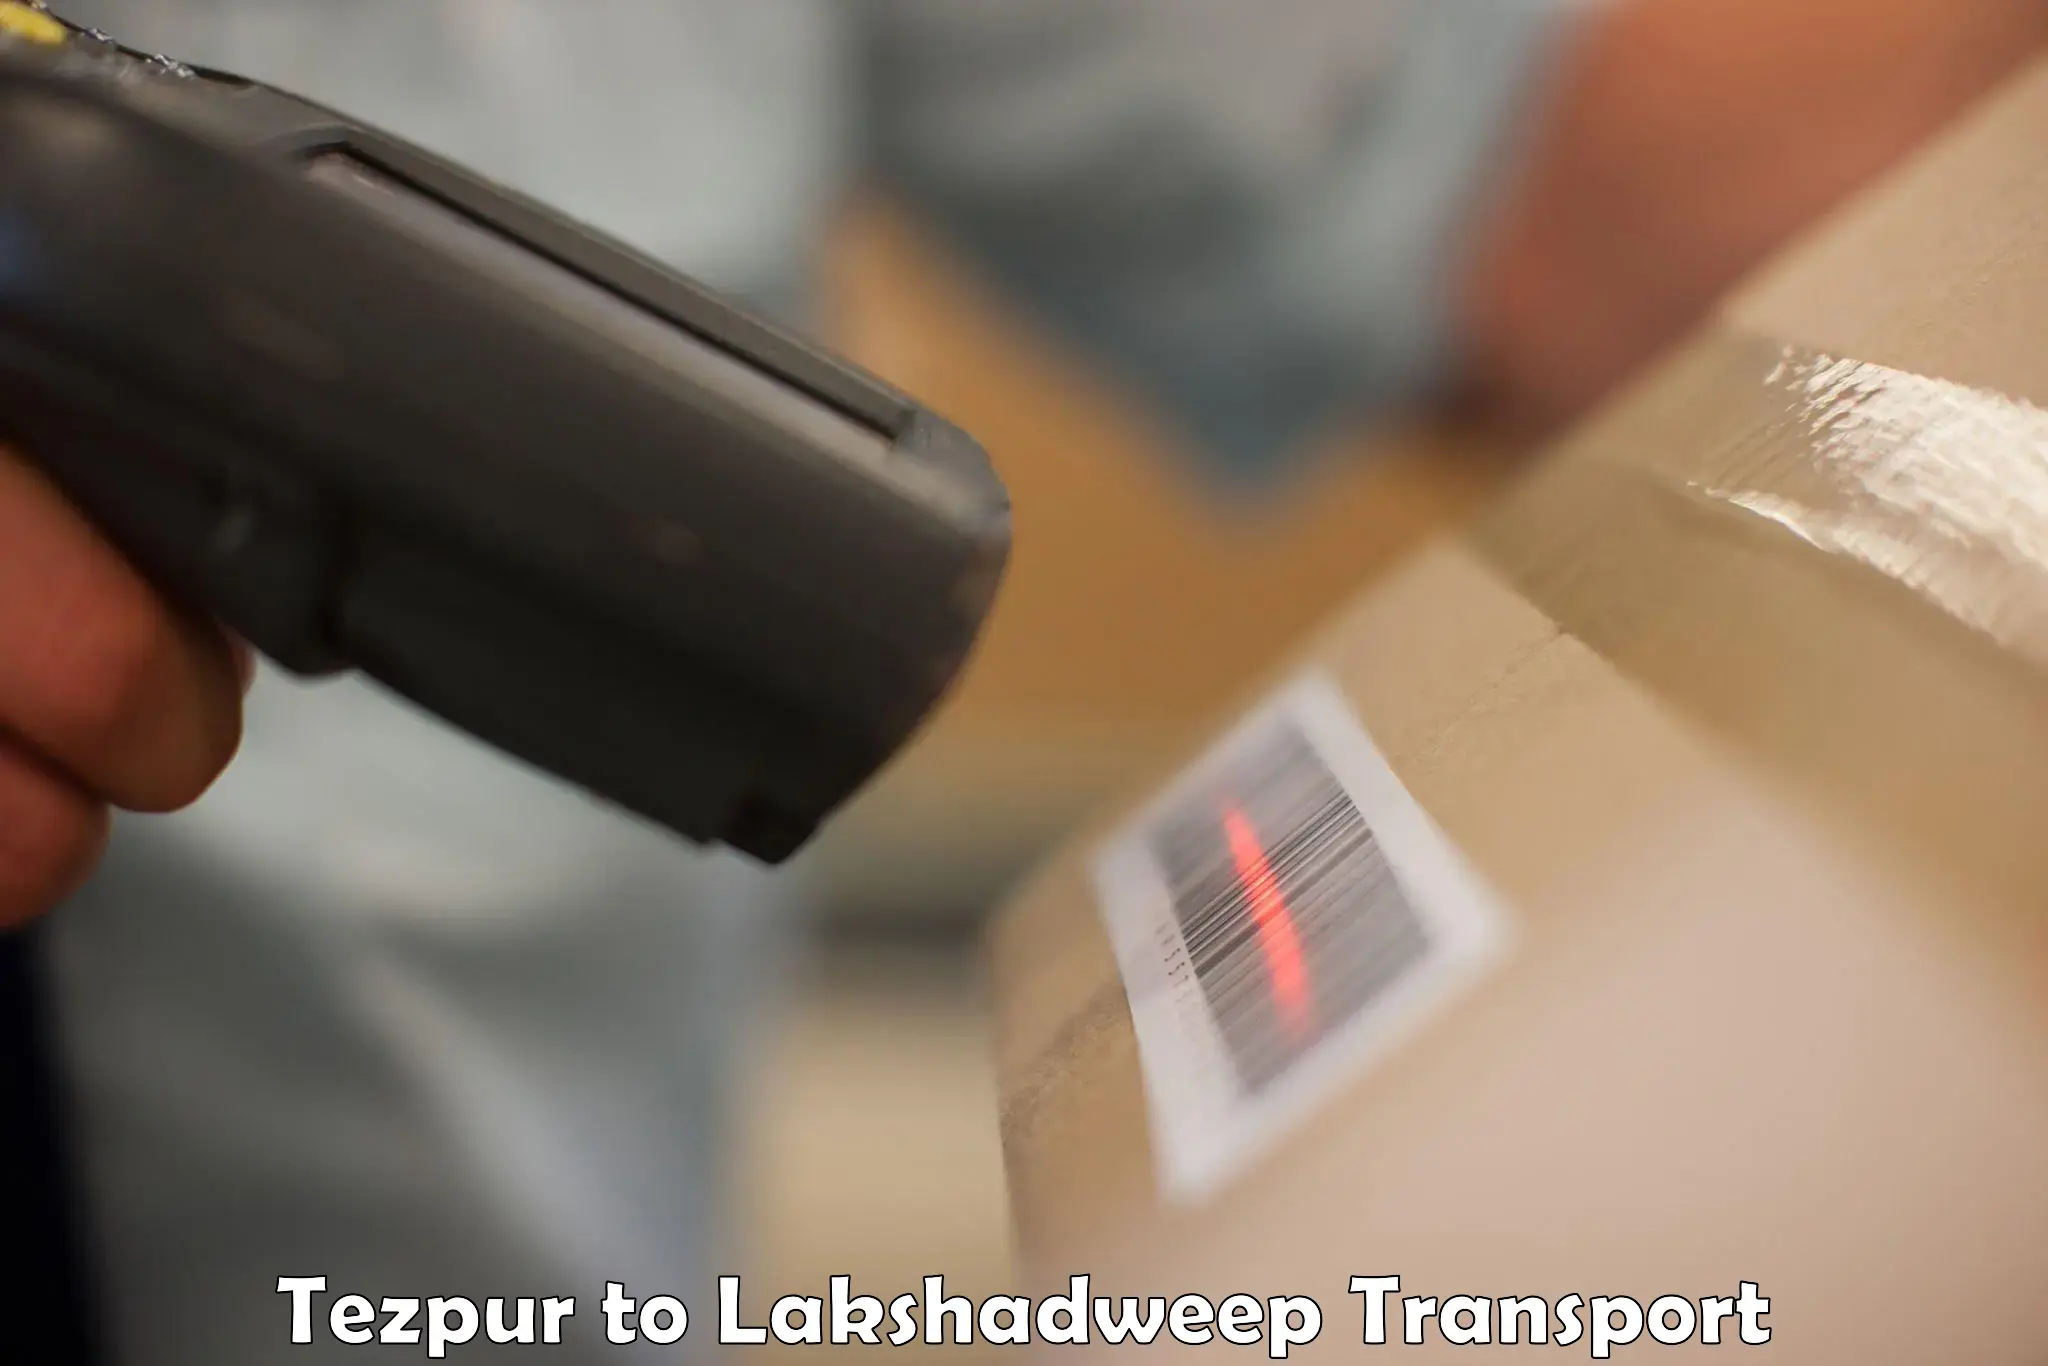 Furniture transport service Tezpur to Lakshadweep